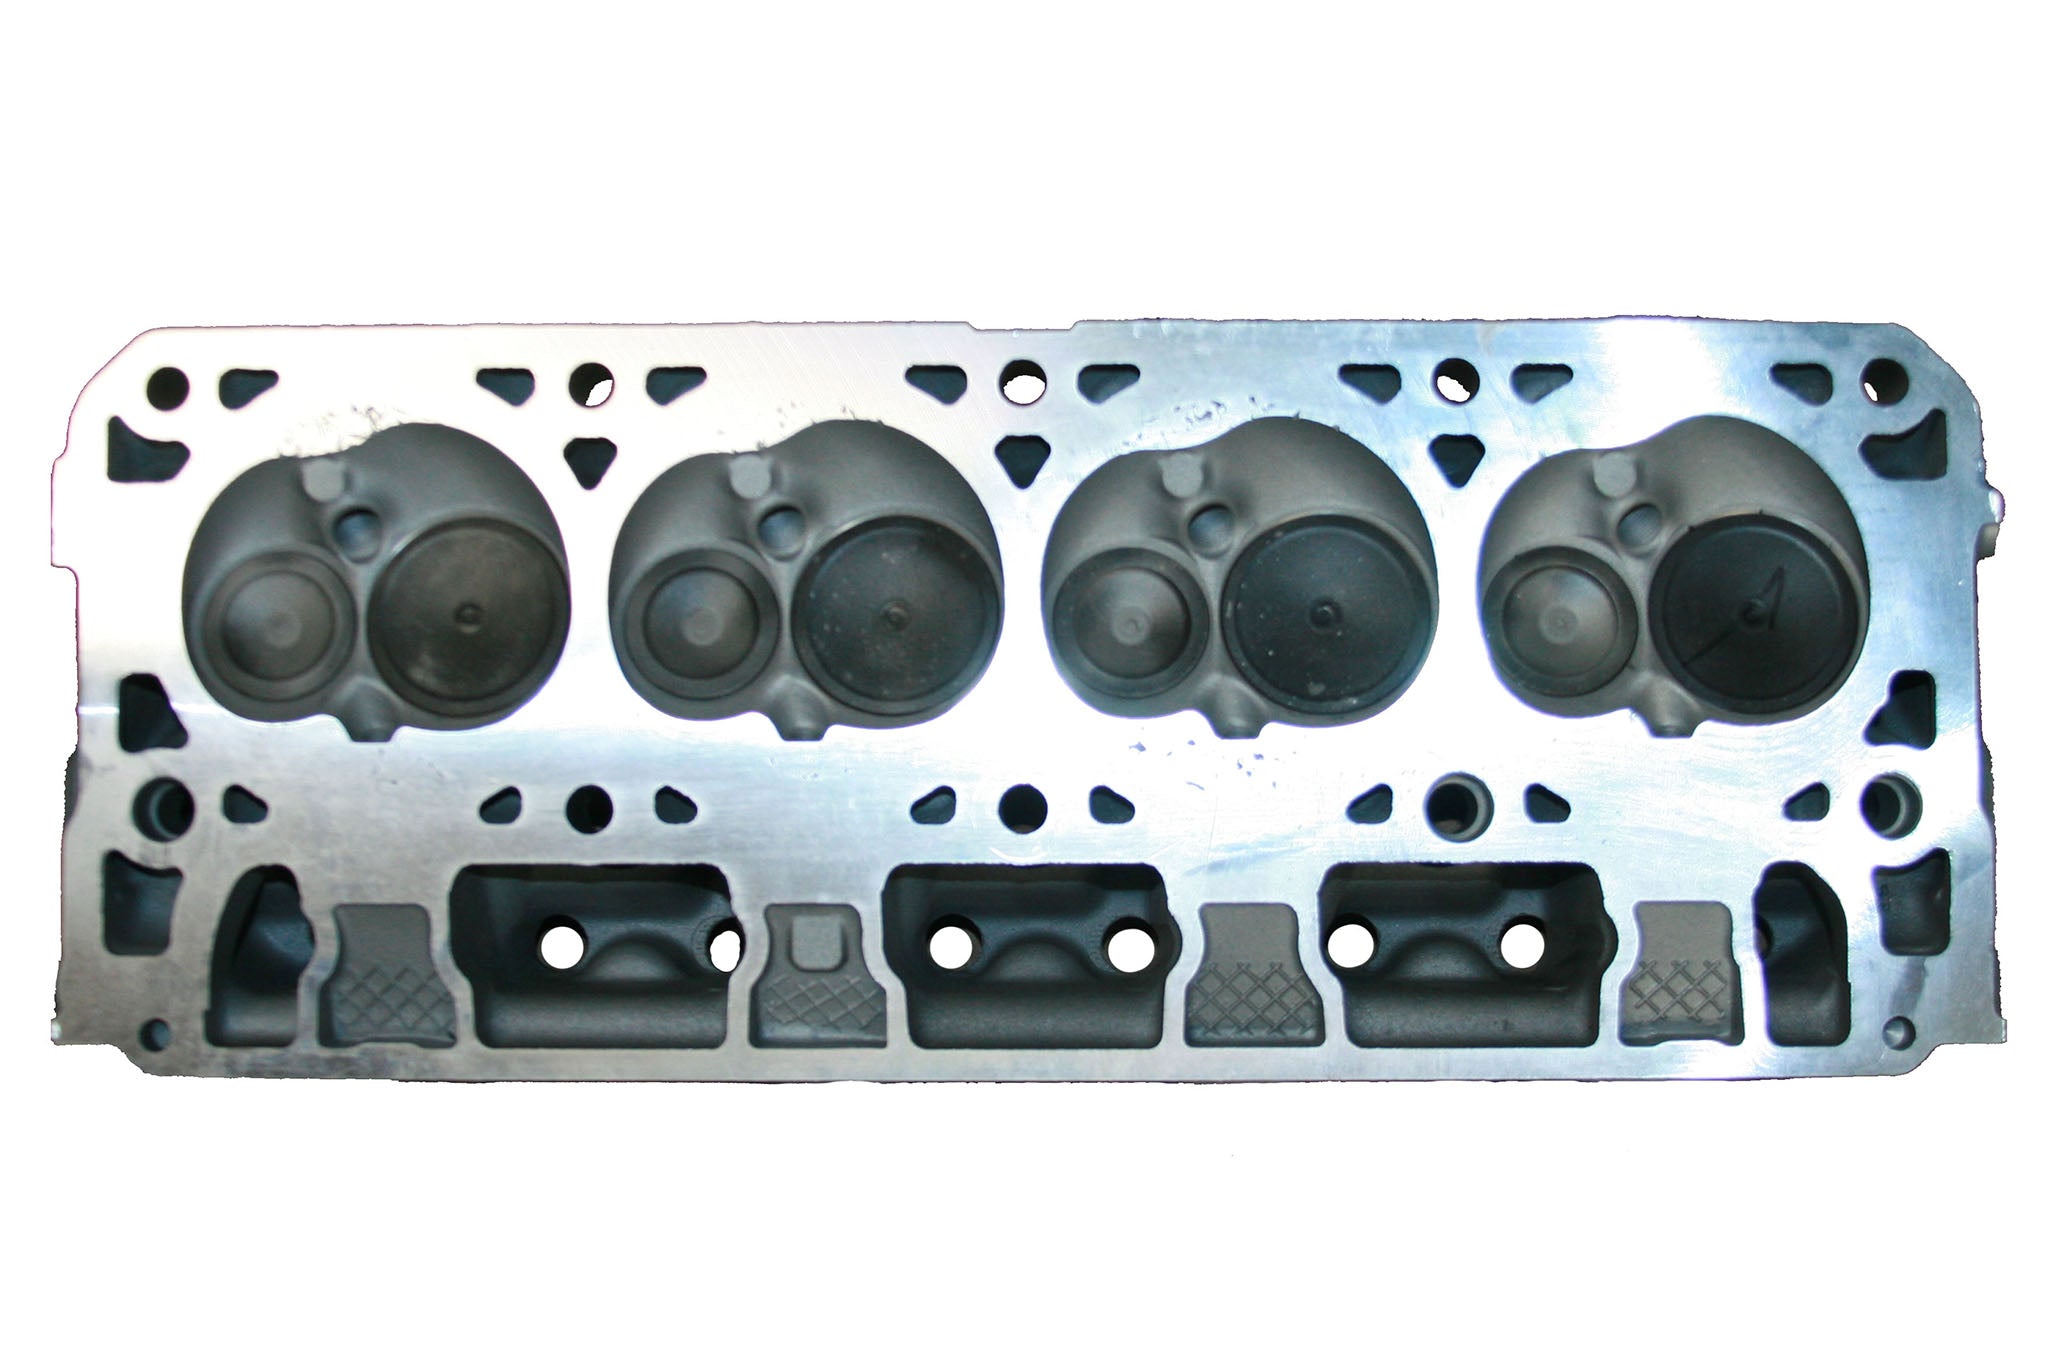 2014-20 CHEVROLET 6.2L L86 rebuilt Cylinder Head casting # 12685669